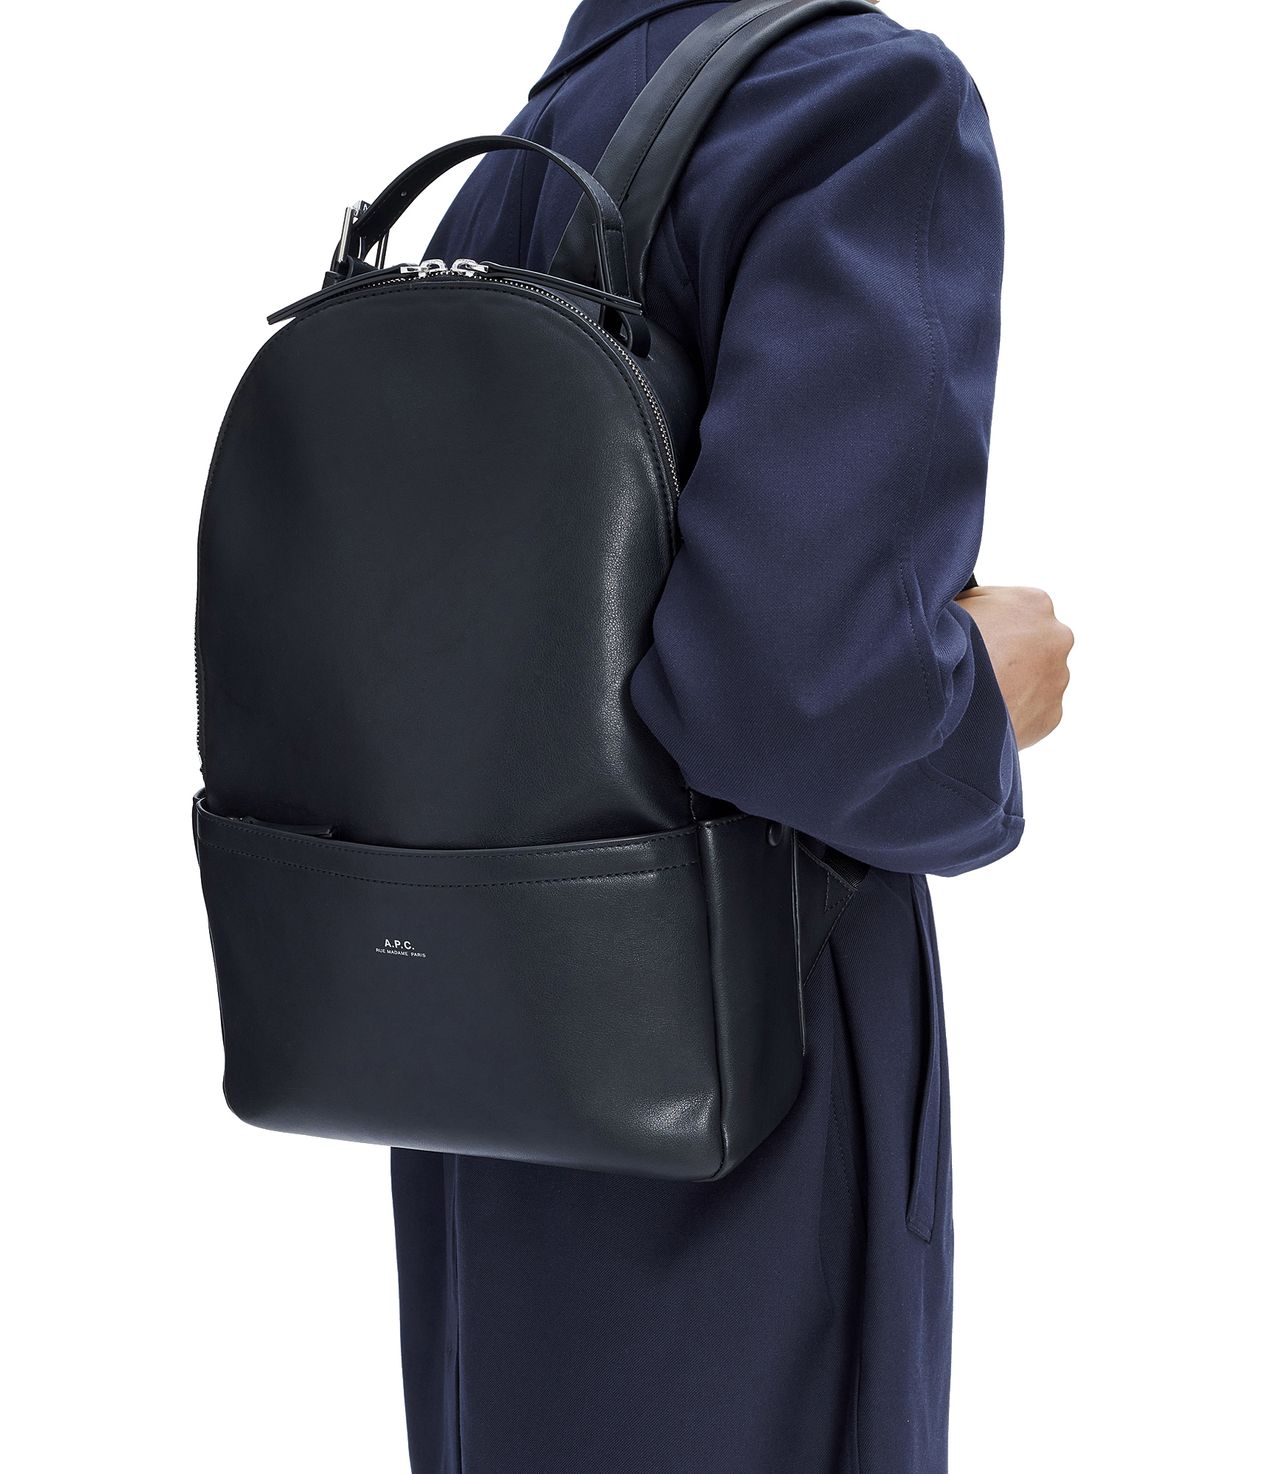 Nino backpack BLACK APC